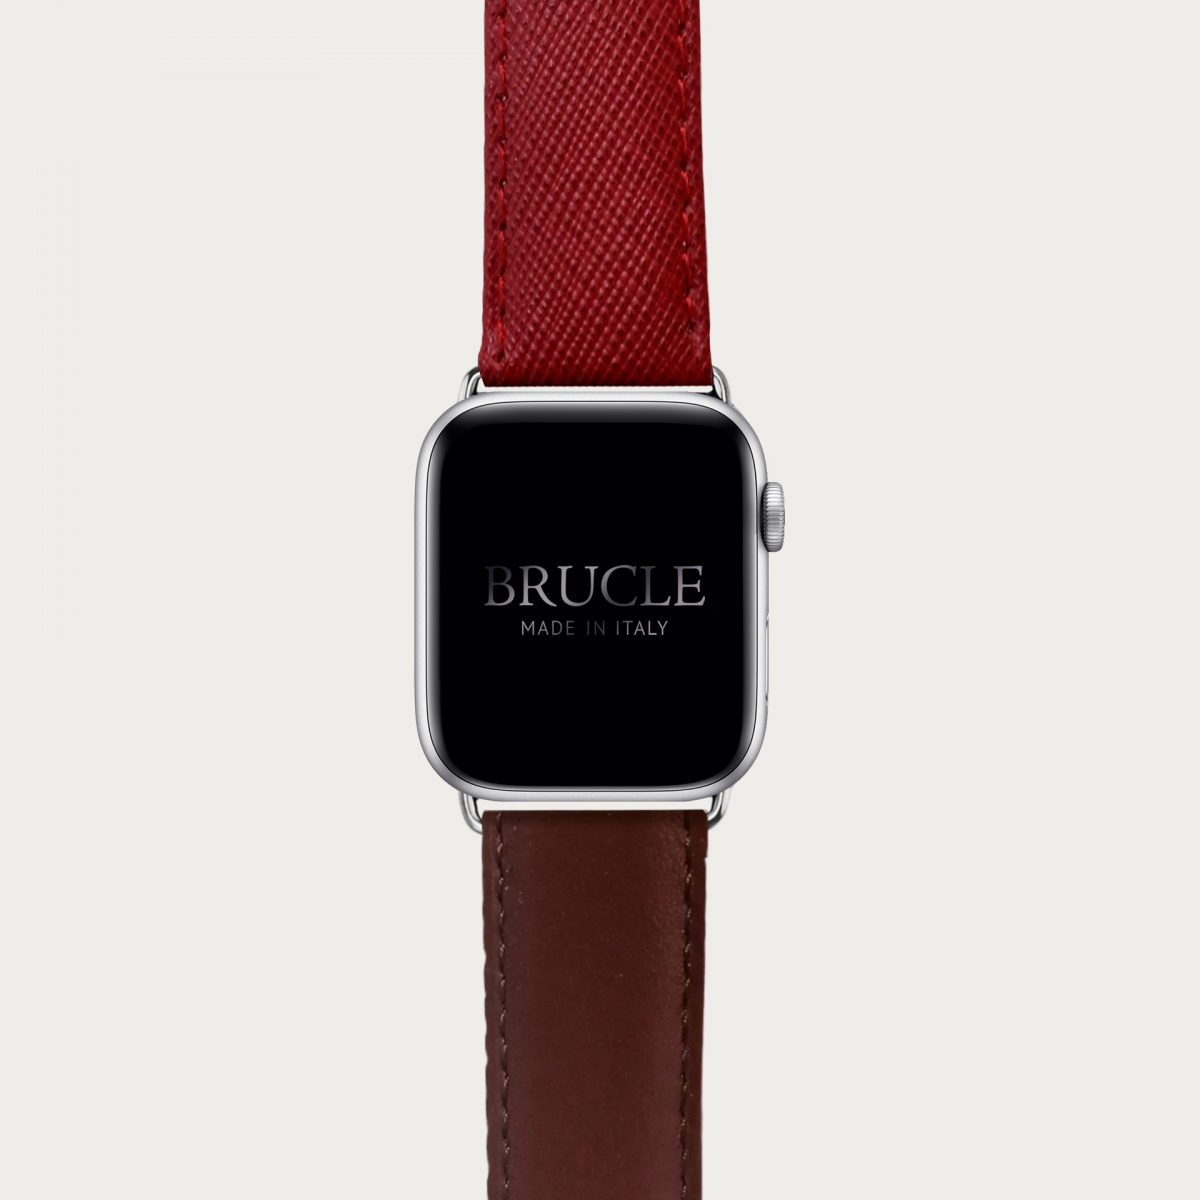 BRUCLE Correa de reloj compatible con Apple Watch / Samsung smartwatch, estampado rojo y marrón